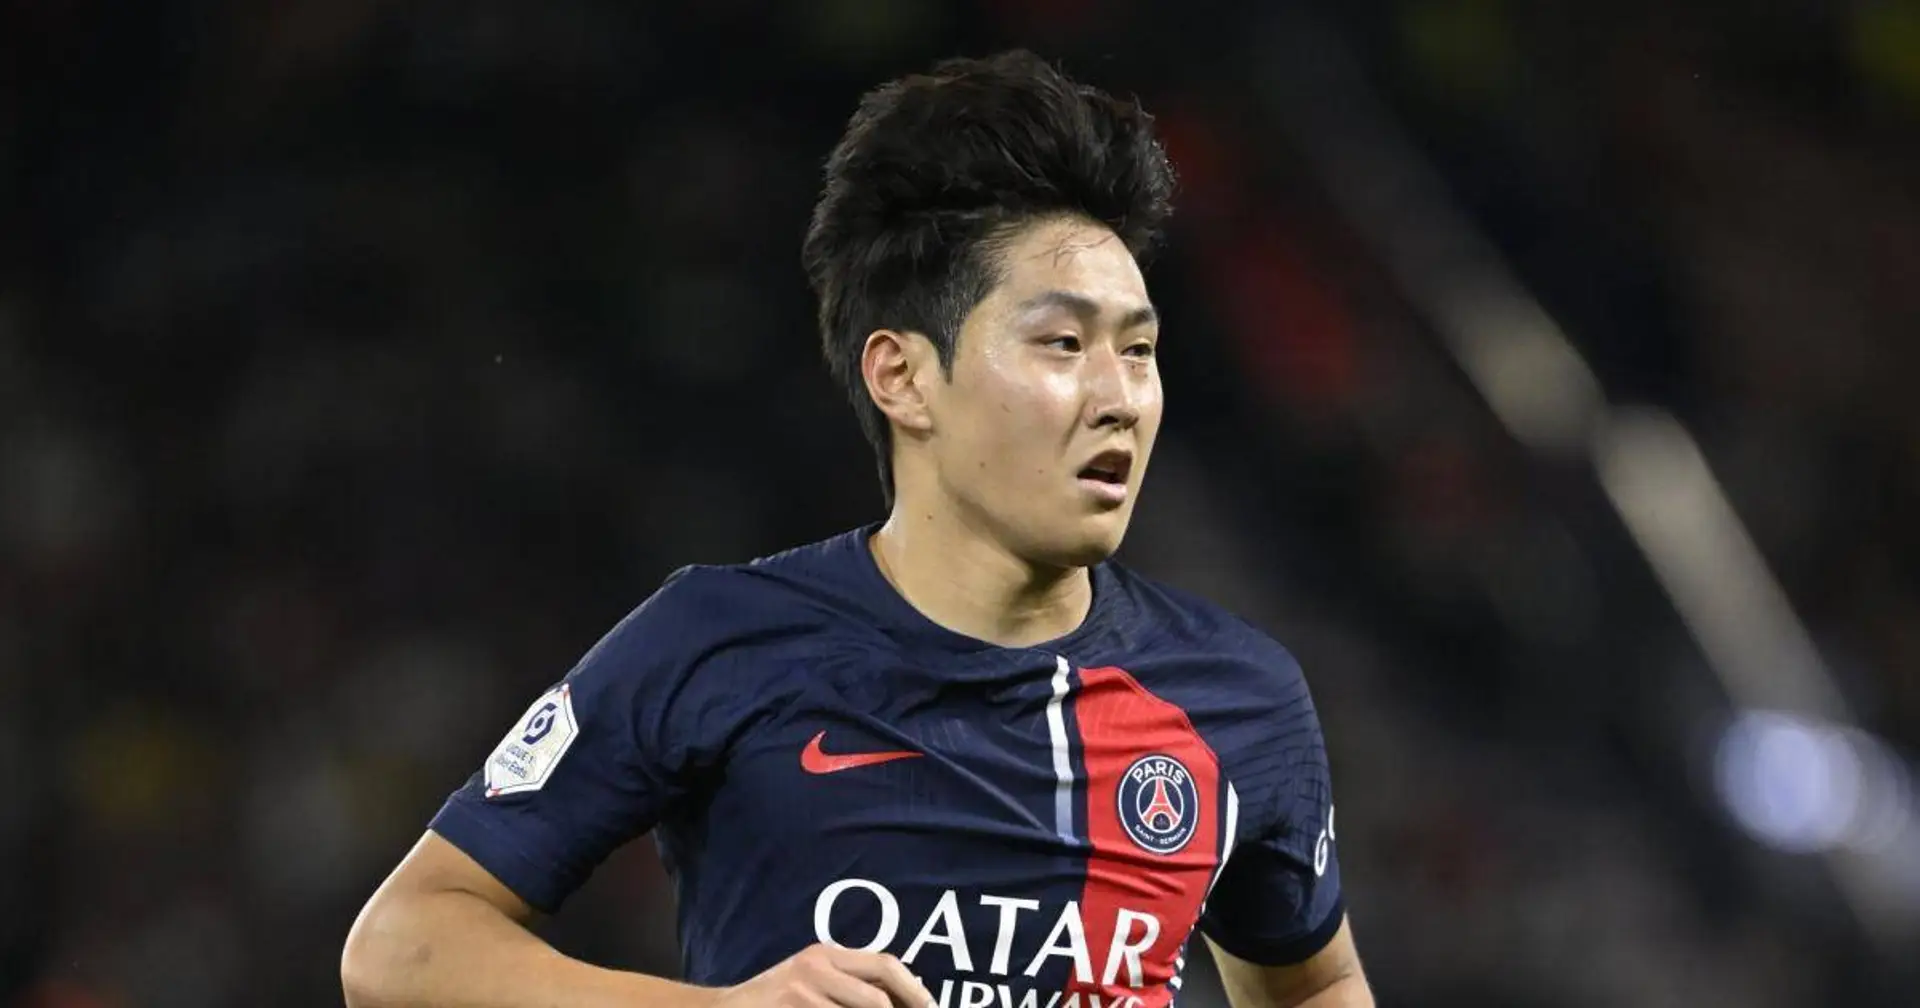 "Pas pu préparer la compétition comme je le voulais" : Lee Kang In revient sur son début de saison tronqué au PSG